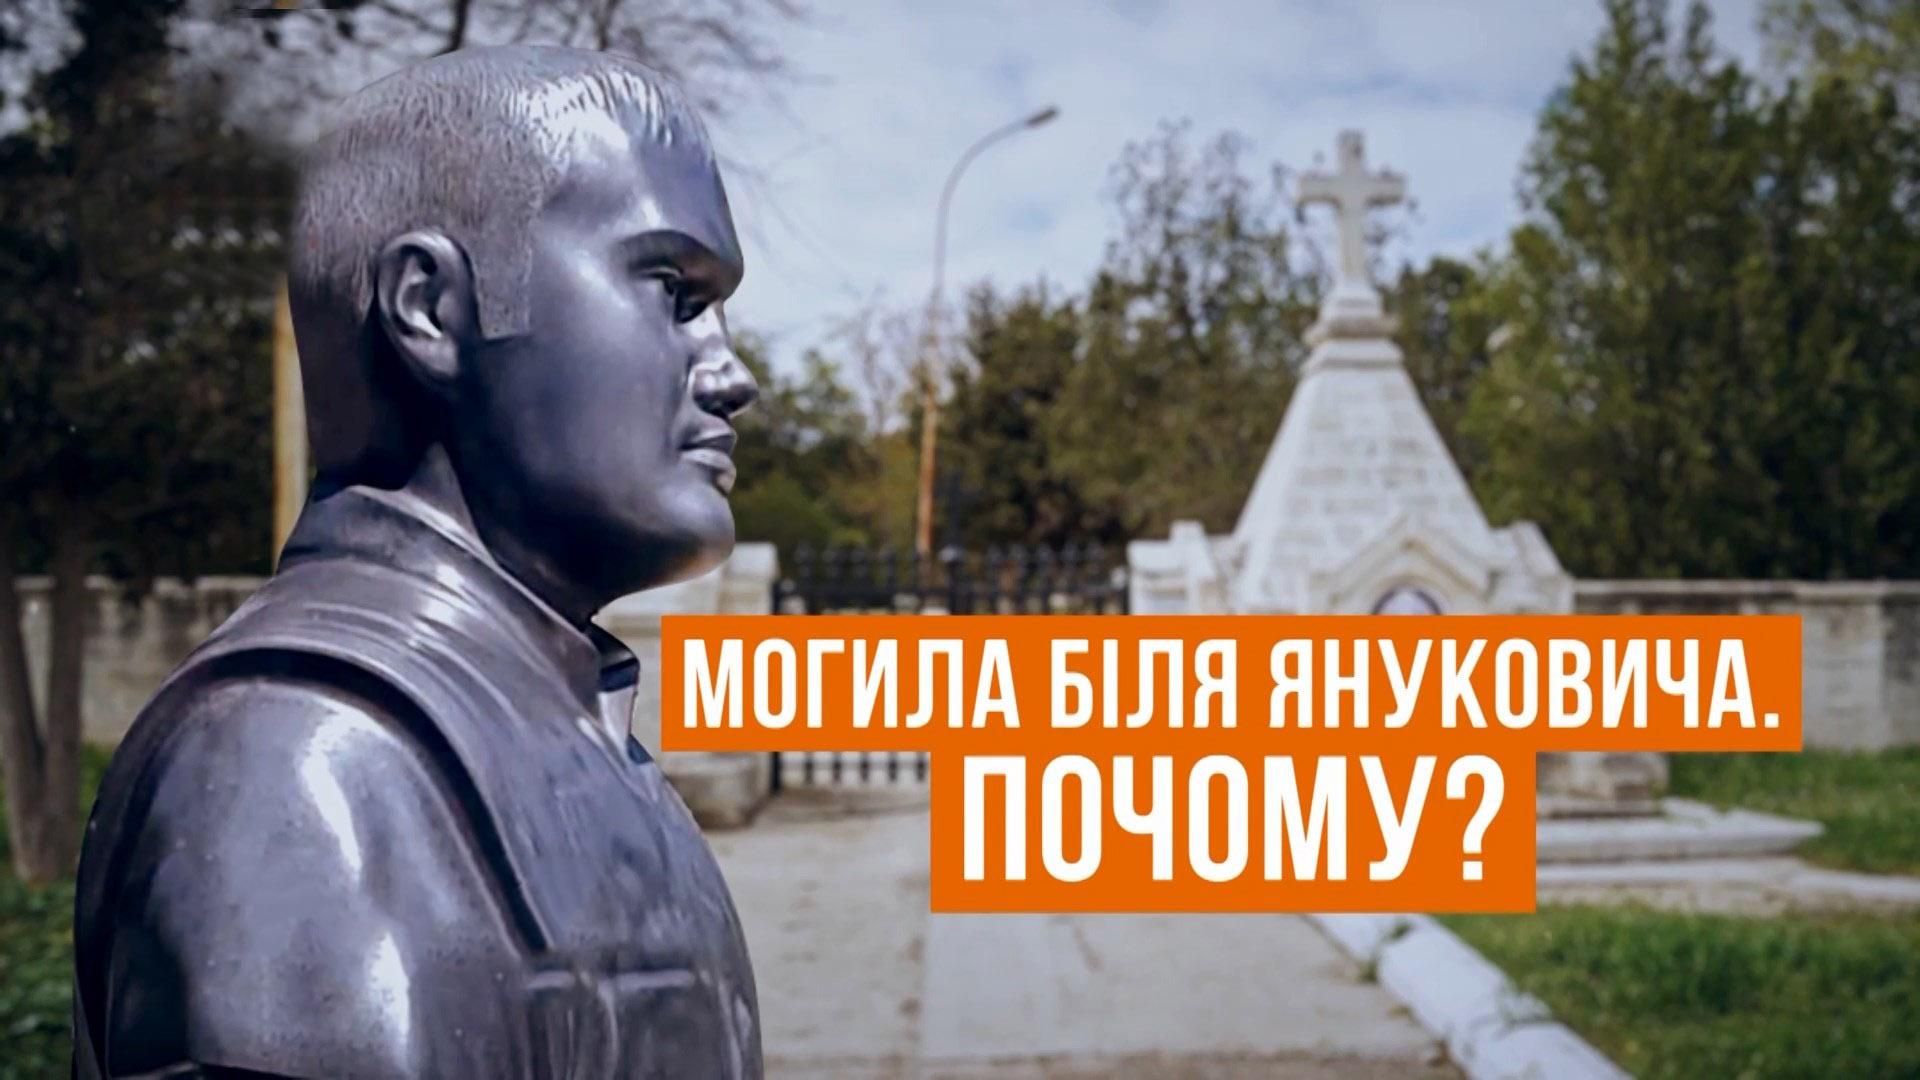 Сколько стоит место на VIP-кладбище, где похоронен сын Януковича